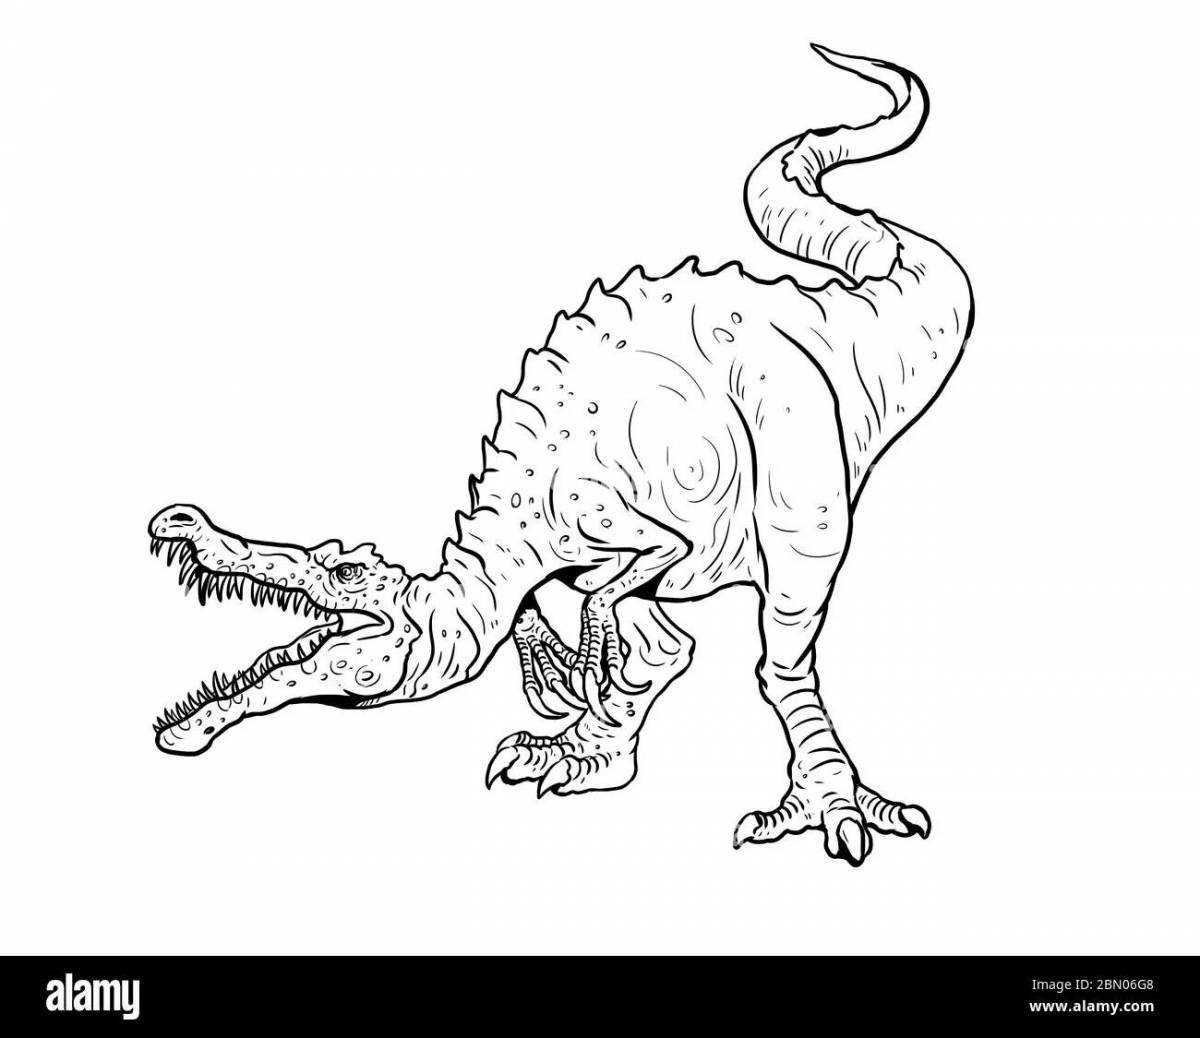 Coloring book cheerful Baryonyx dinosaur